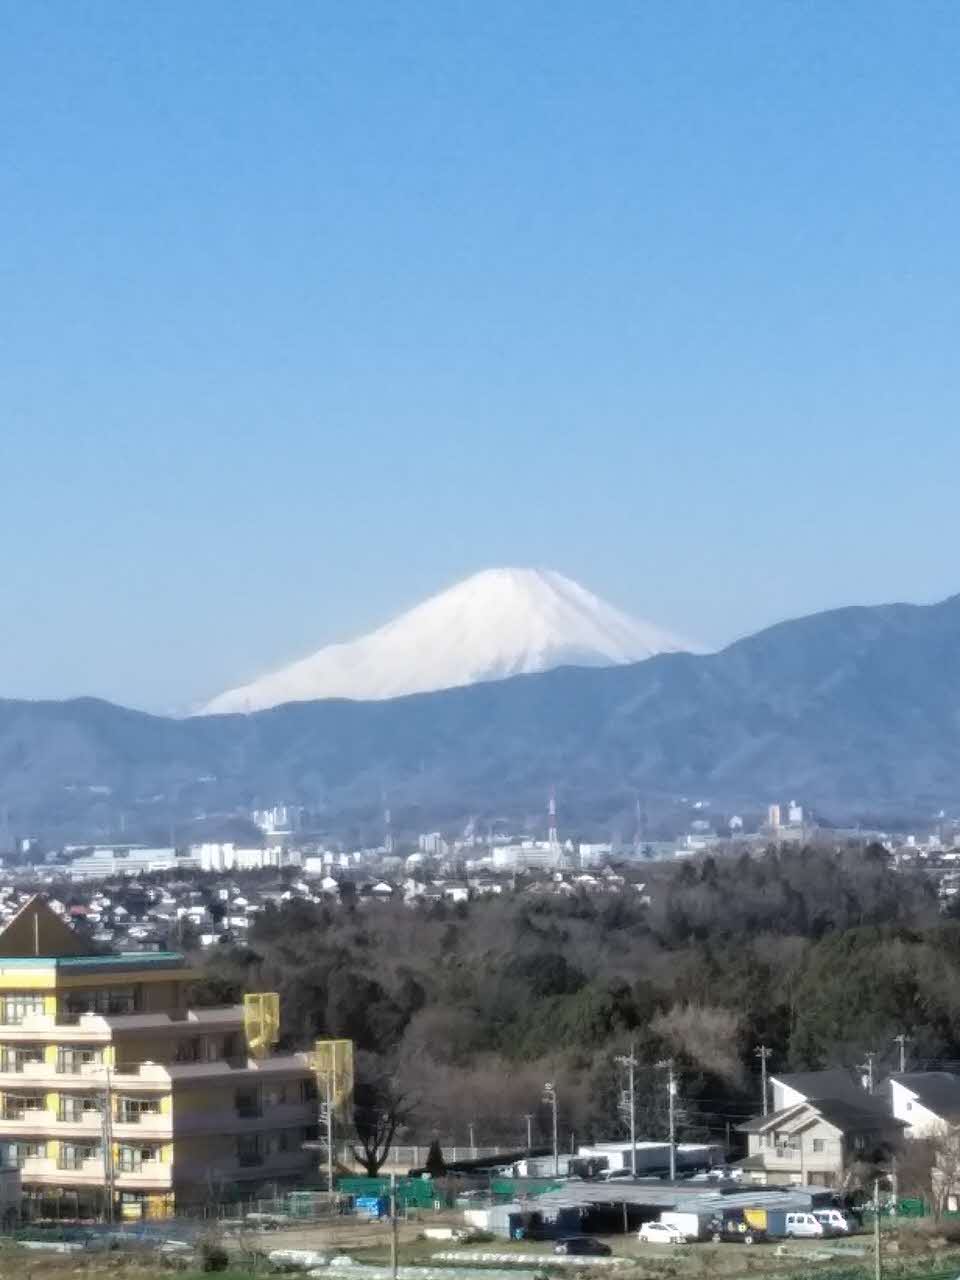 木々が茂った林の向こうに見える街並みと山々の奥に白く雪化粧した富士山の山頂付近が見えている写真